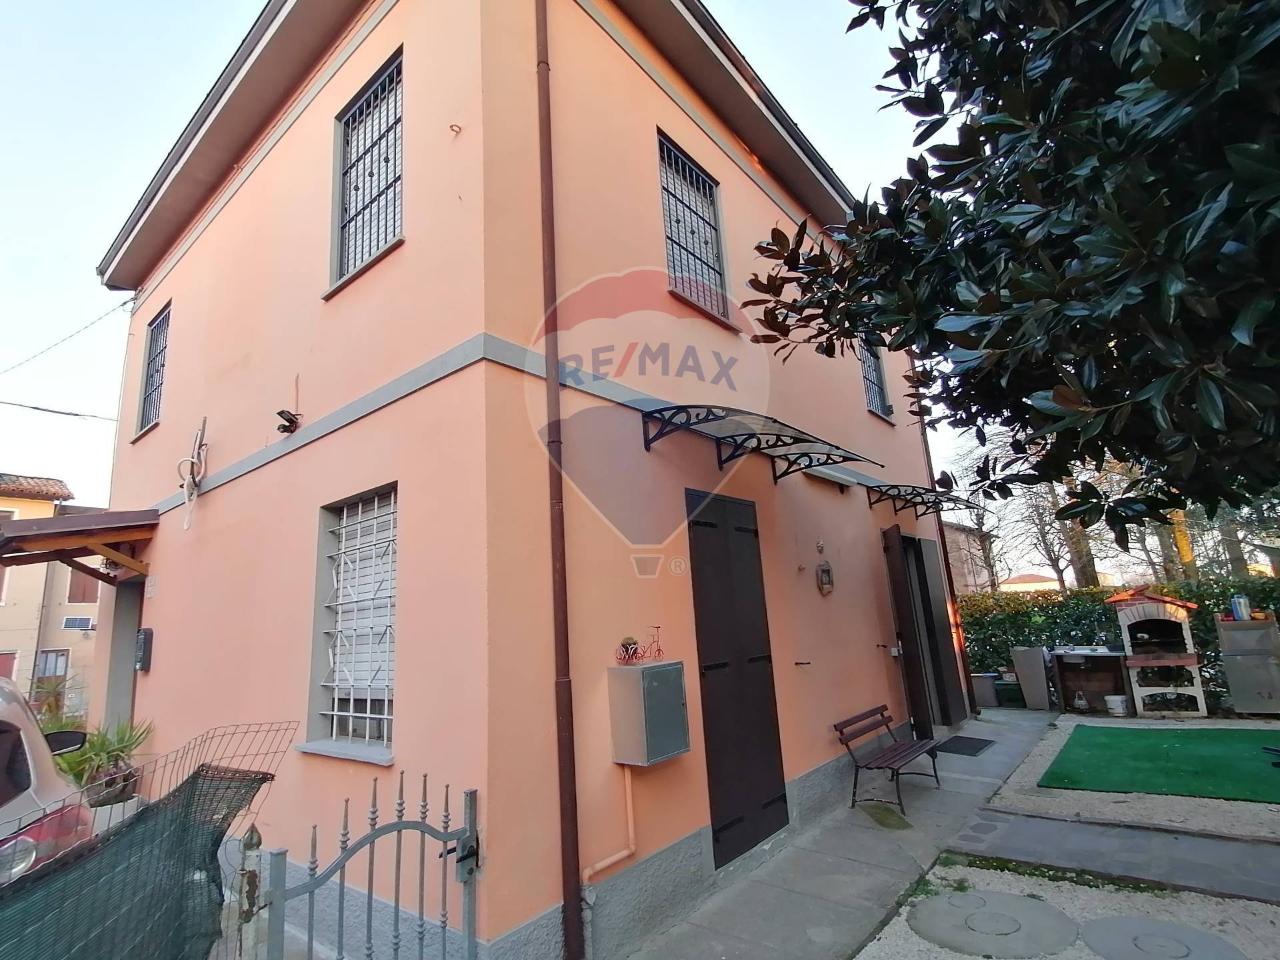 Casa indipendente in vendita a Bomporto